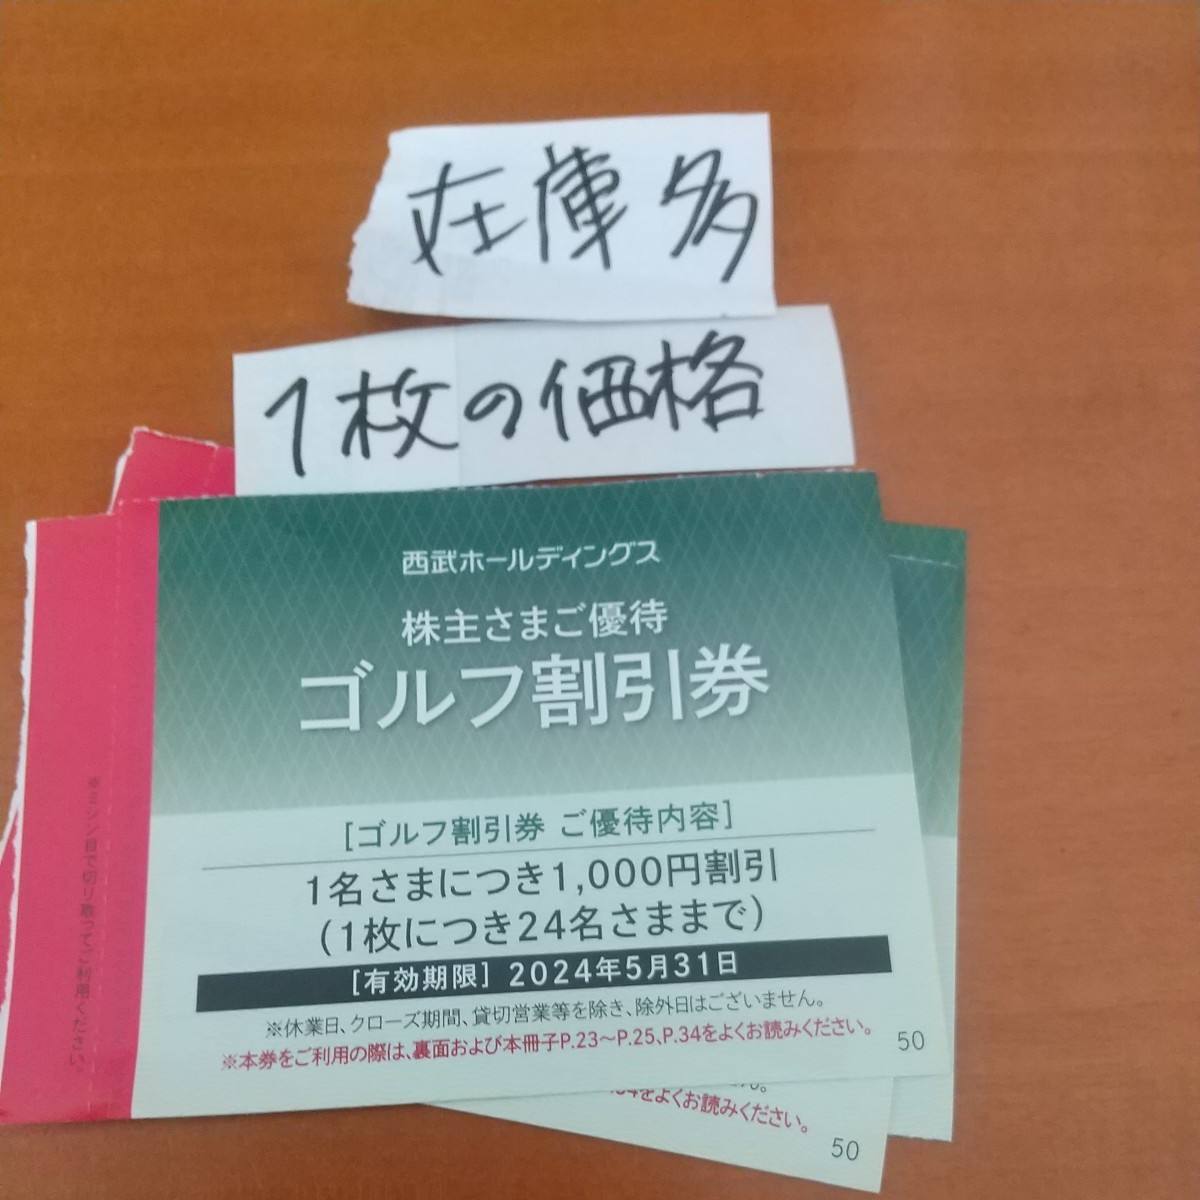 9 штук в складе 9 Seibu Ho Ведущие акционеры Предварительные билеты скидки билетов скидки билеты на гольф билеты на гольф поля для гольфа затраты на доставку для гольфа от 63 иен до 2024,5 Muscari